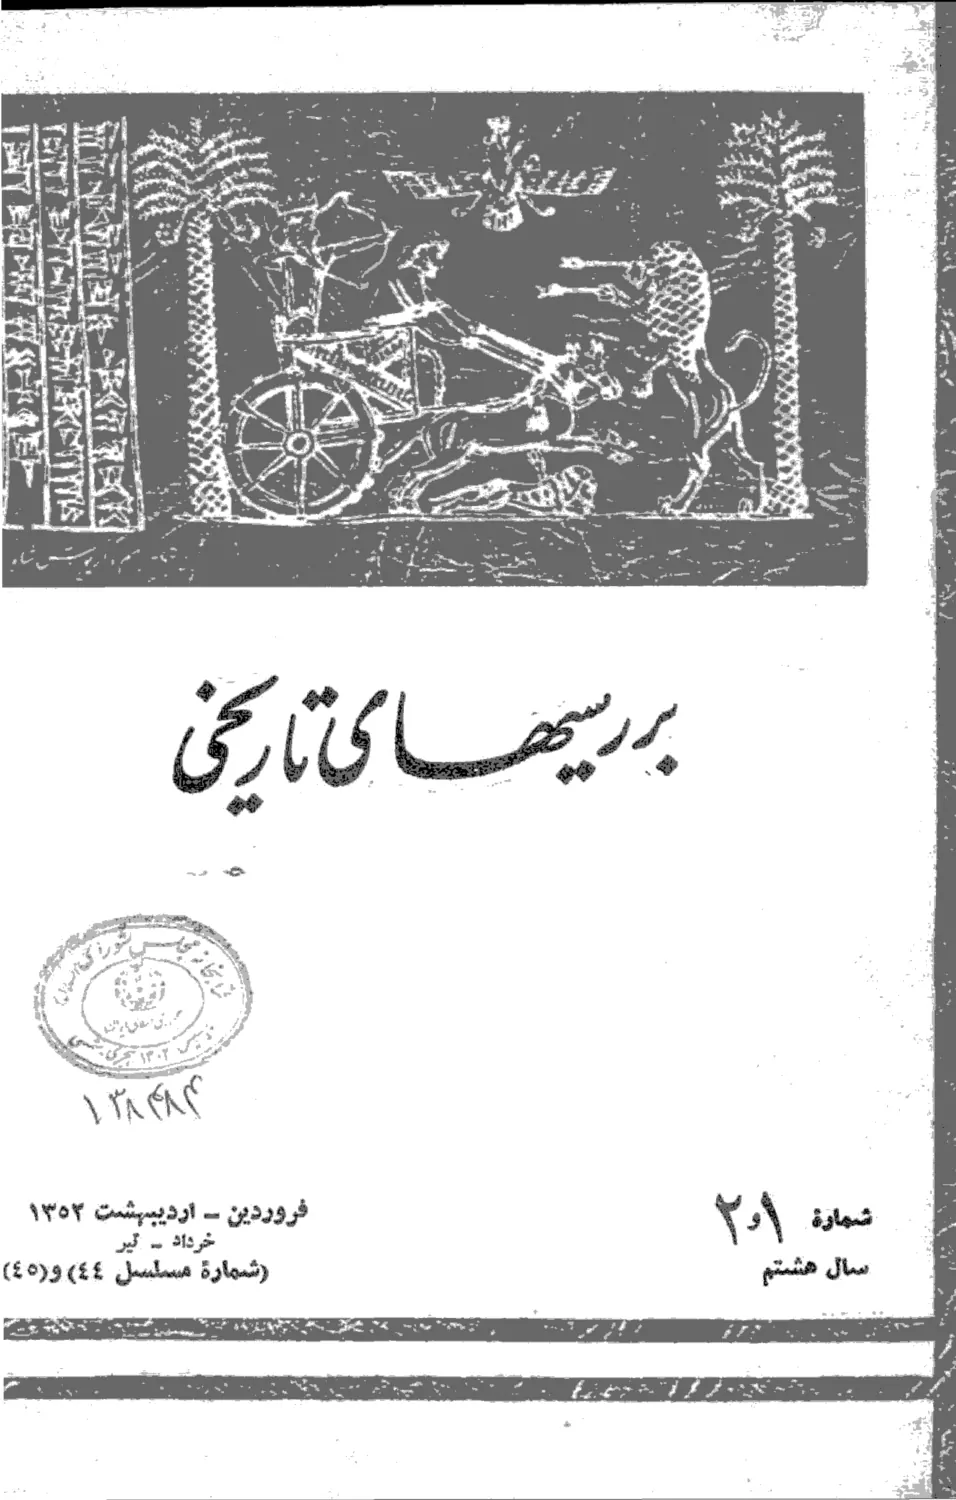 بررسی های تاریخی - سال هشتم - شماره 1 و 2 - فروردین، تیر 1352